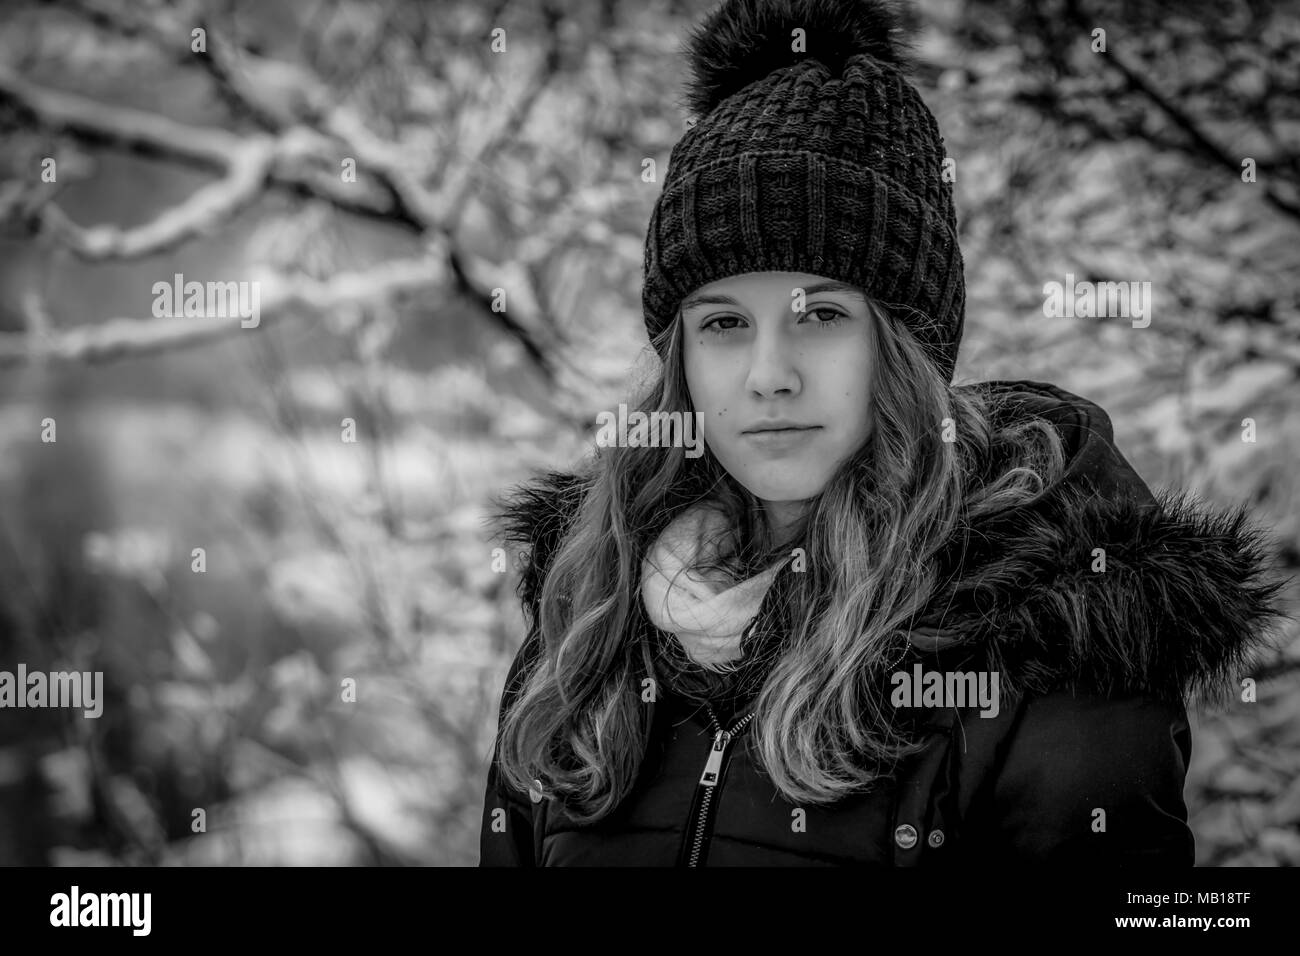 Closeup Portrait von recht jugendlich Mädchen im Winter, Schwarz und Weiß. Schönen kaukasischen Jugendmädchen in schwarzen Mantel, verschwommenes verschneiten Wald im Hintergrund. Stockfoto